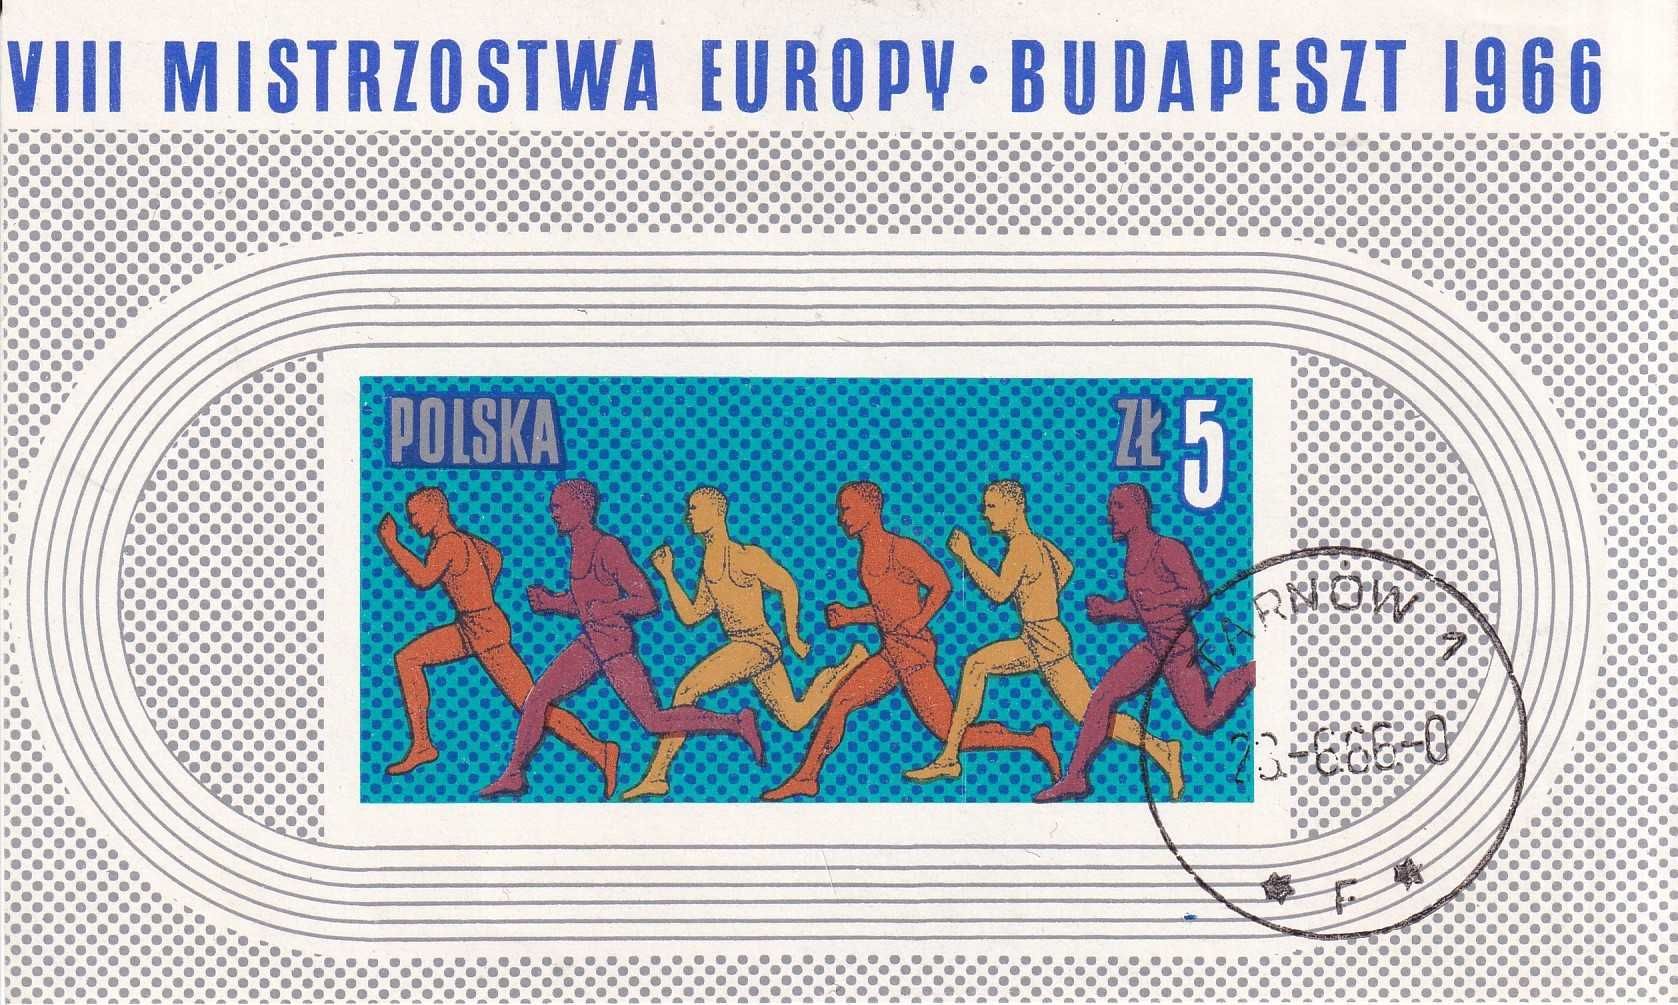 Polska 1966 bl.47 kasowany cena 1,20 zł kat.1€